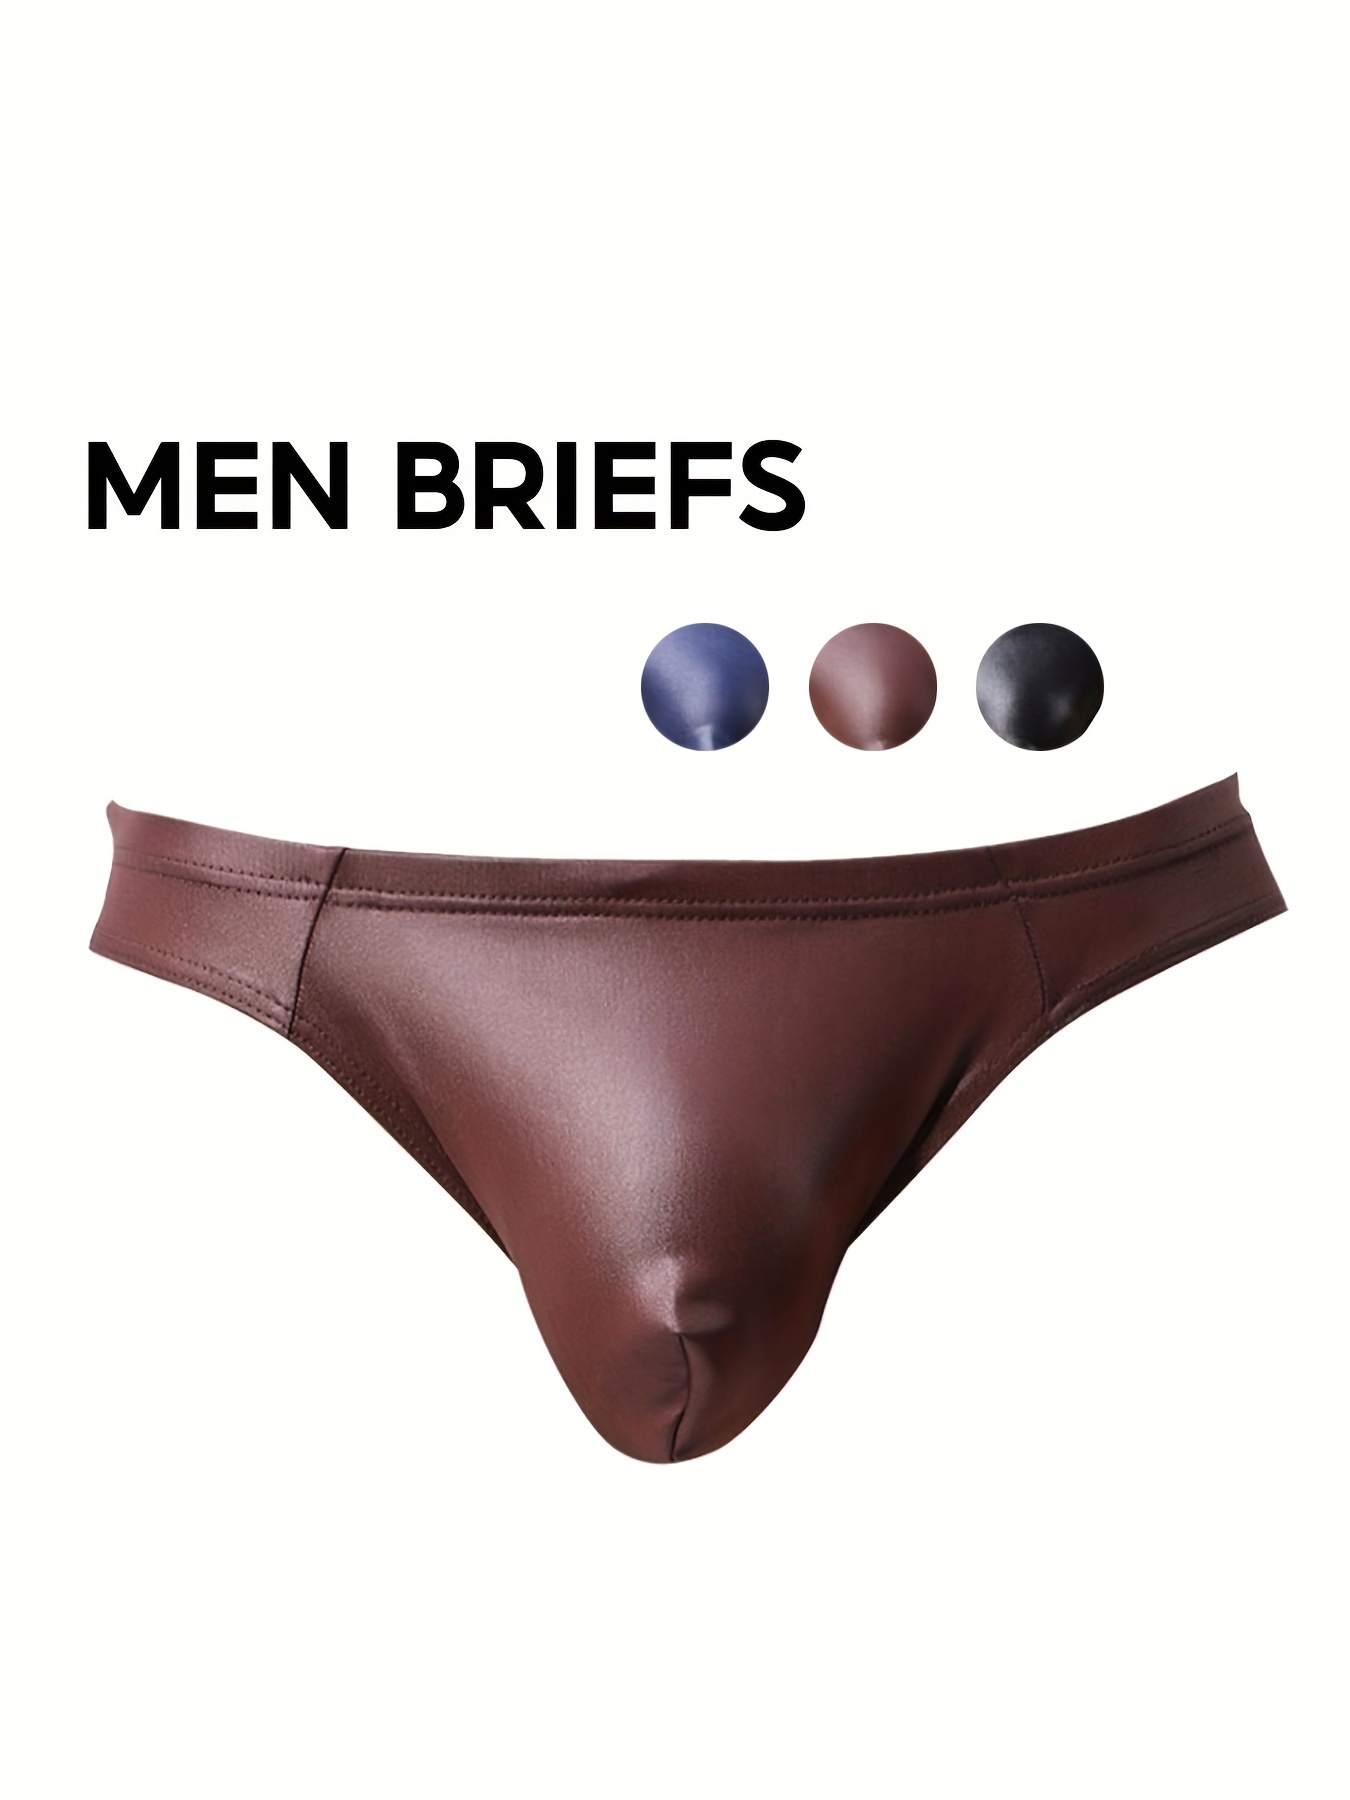 Clear PVC Panties Adult Shorts Oversized Man Male Lingerie Transpartent PVC  Underwear Lingerie,Orange,XXXL